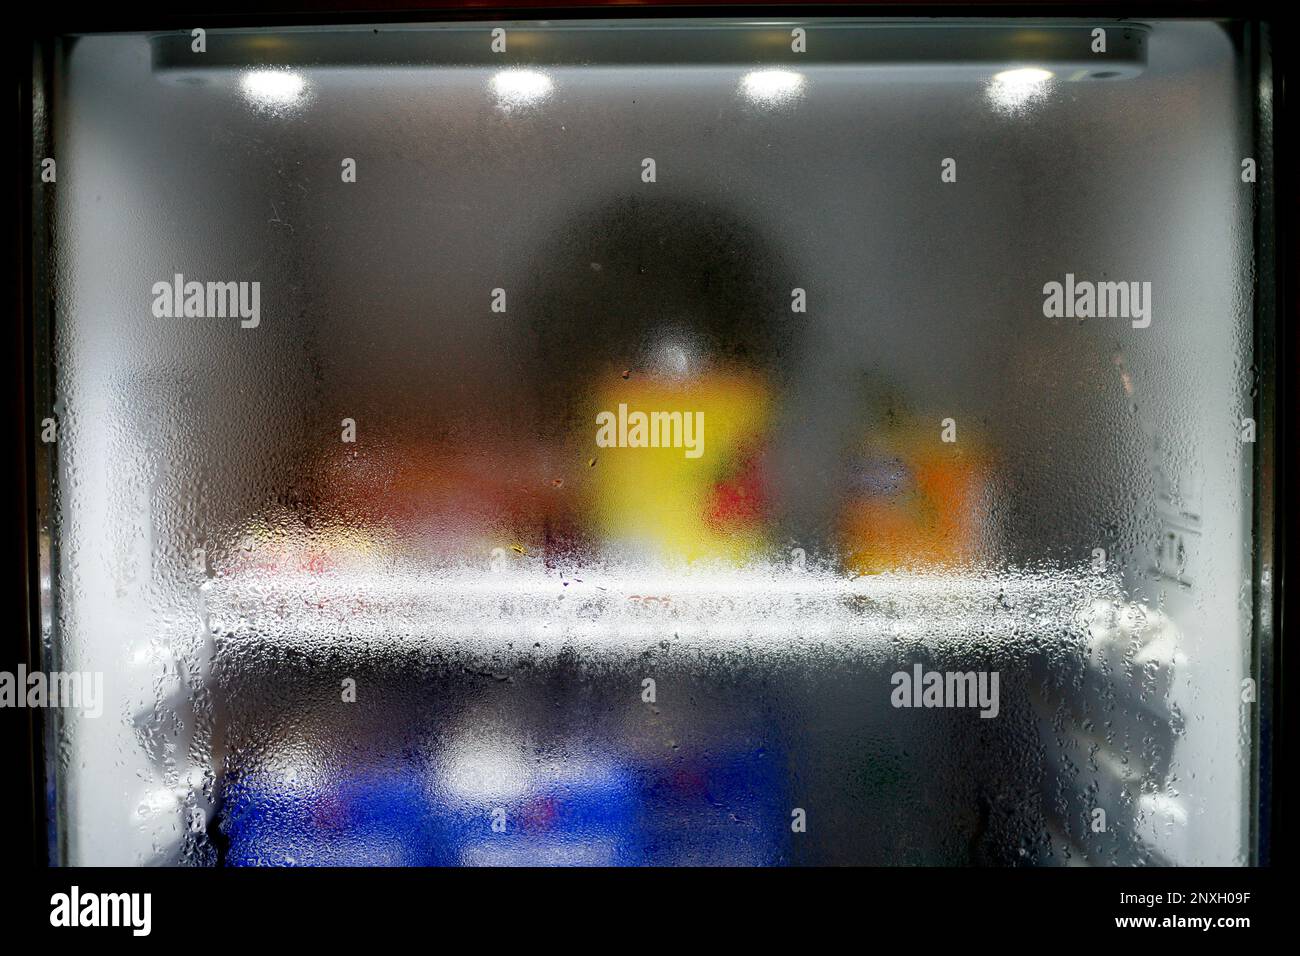 Primo piano delle gocce d'acqua sul bicchiere del frigorifero. Condizioni  di condensazione dell'acqua nell'aria, formando goccioline d'acqua sfocate  Foto stock - Alamy